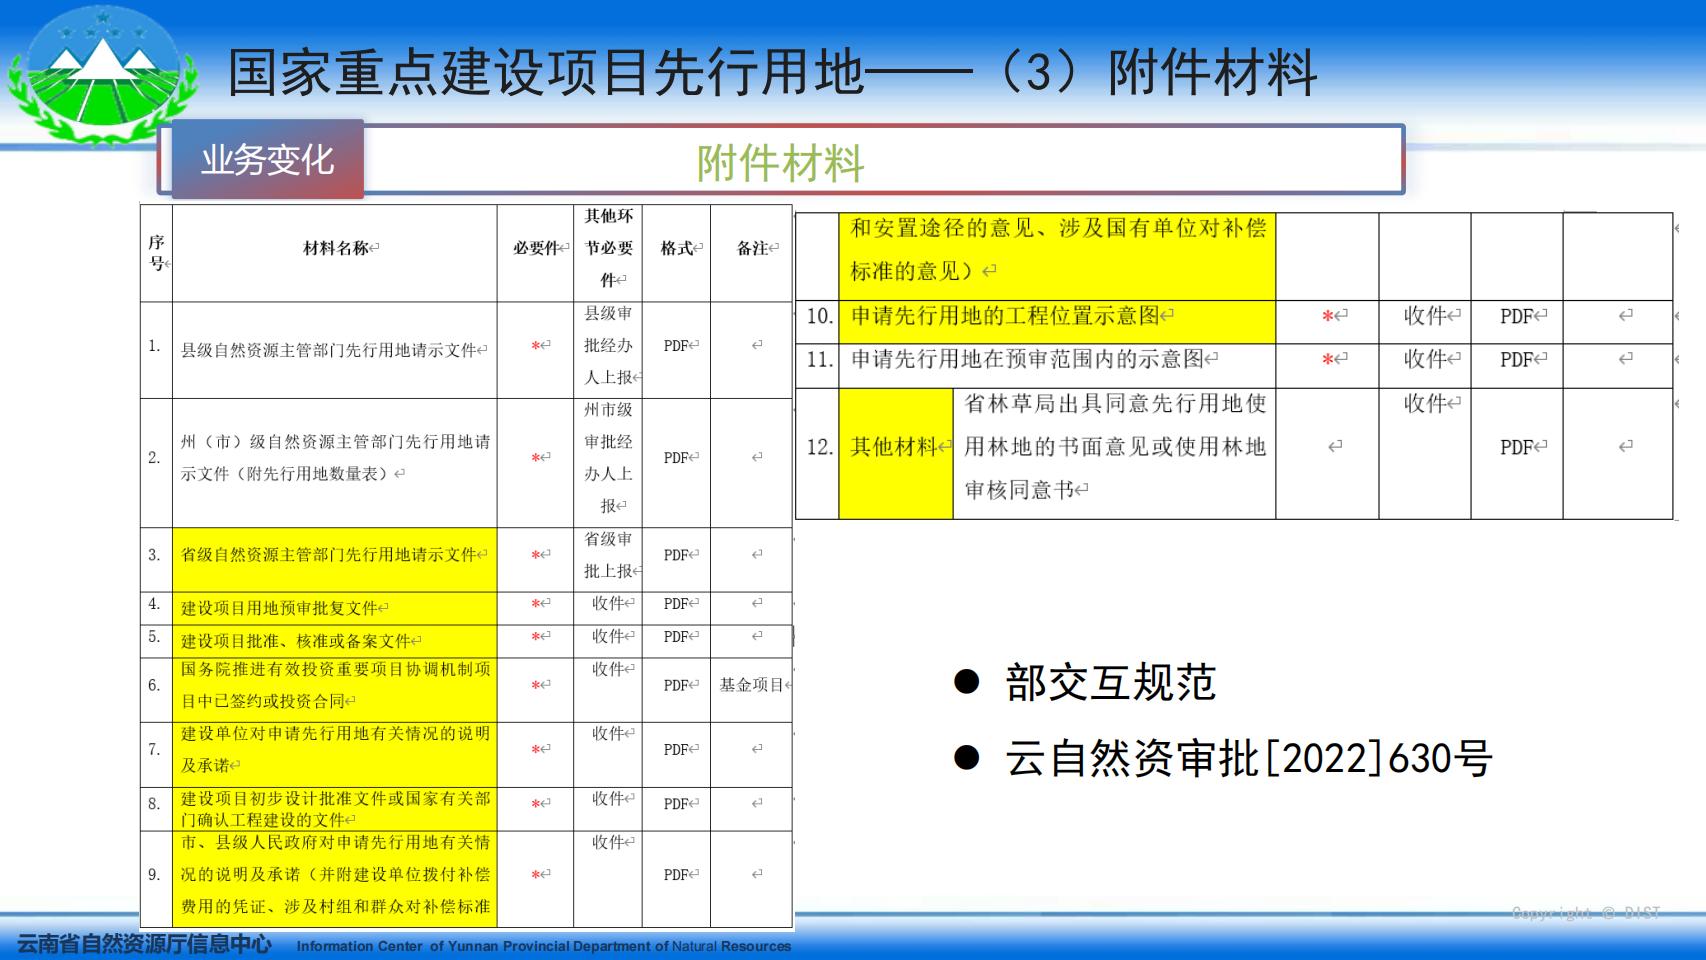 云南省国土空间用途管制与监管系统系统培训